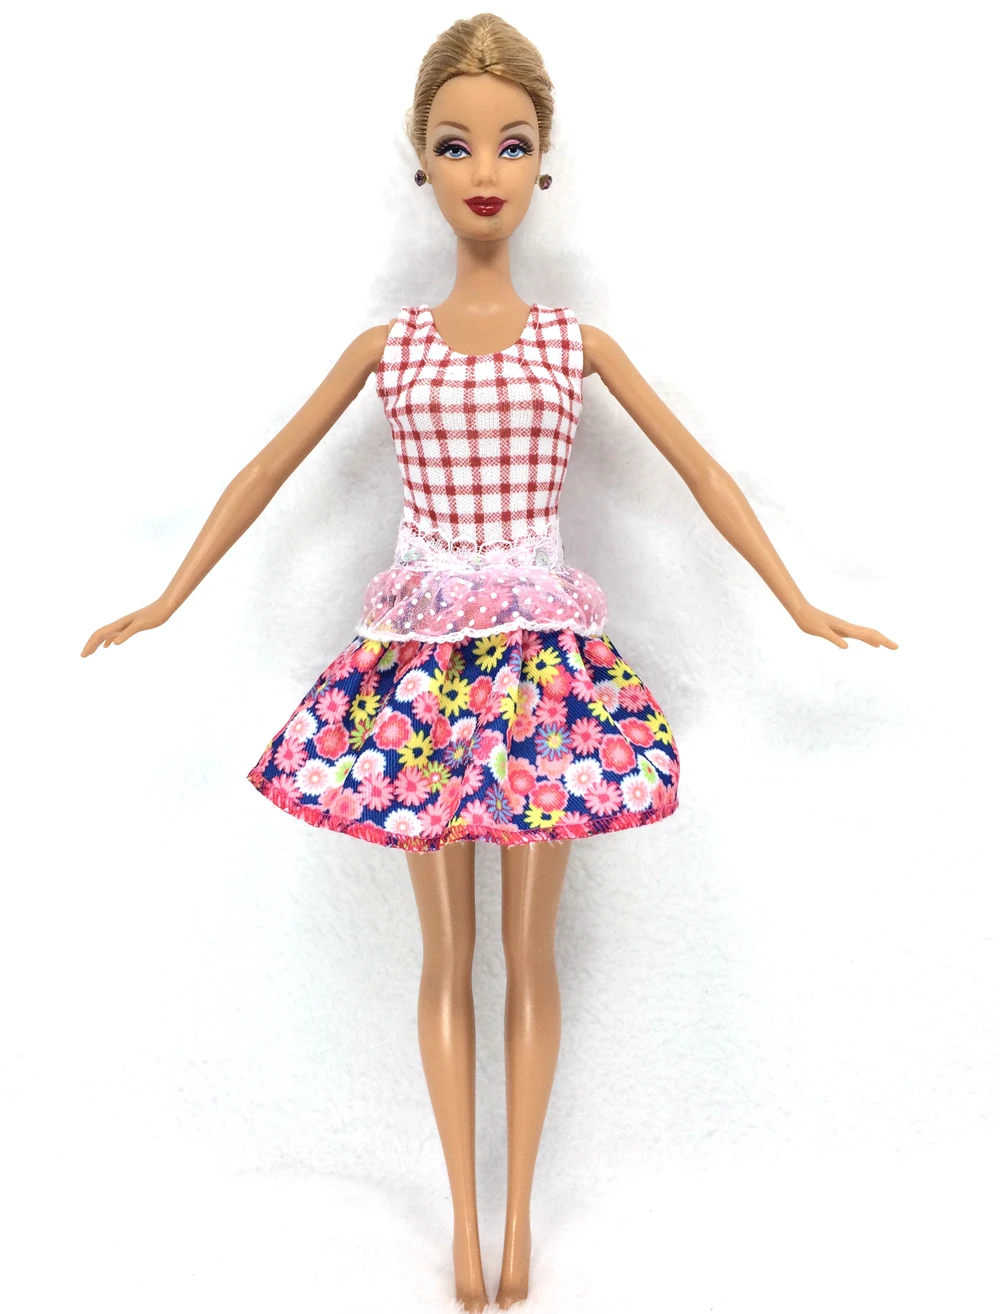 Нагорный Карабах 10 компл./лот в случайном порядке смешивания Стиль Новые платье куклы красивая праздничная одежда популярное модное платье для куклы Барби Best девочки подарок